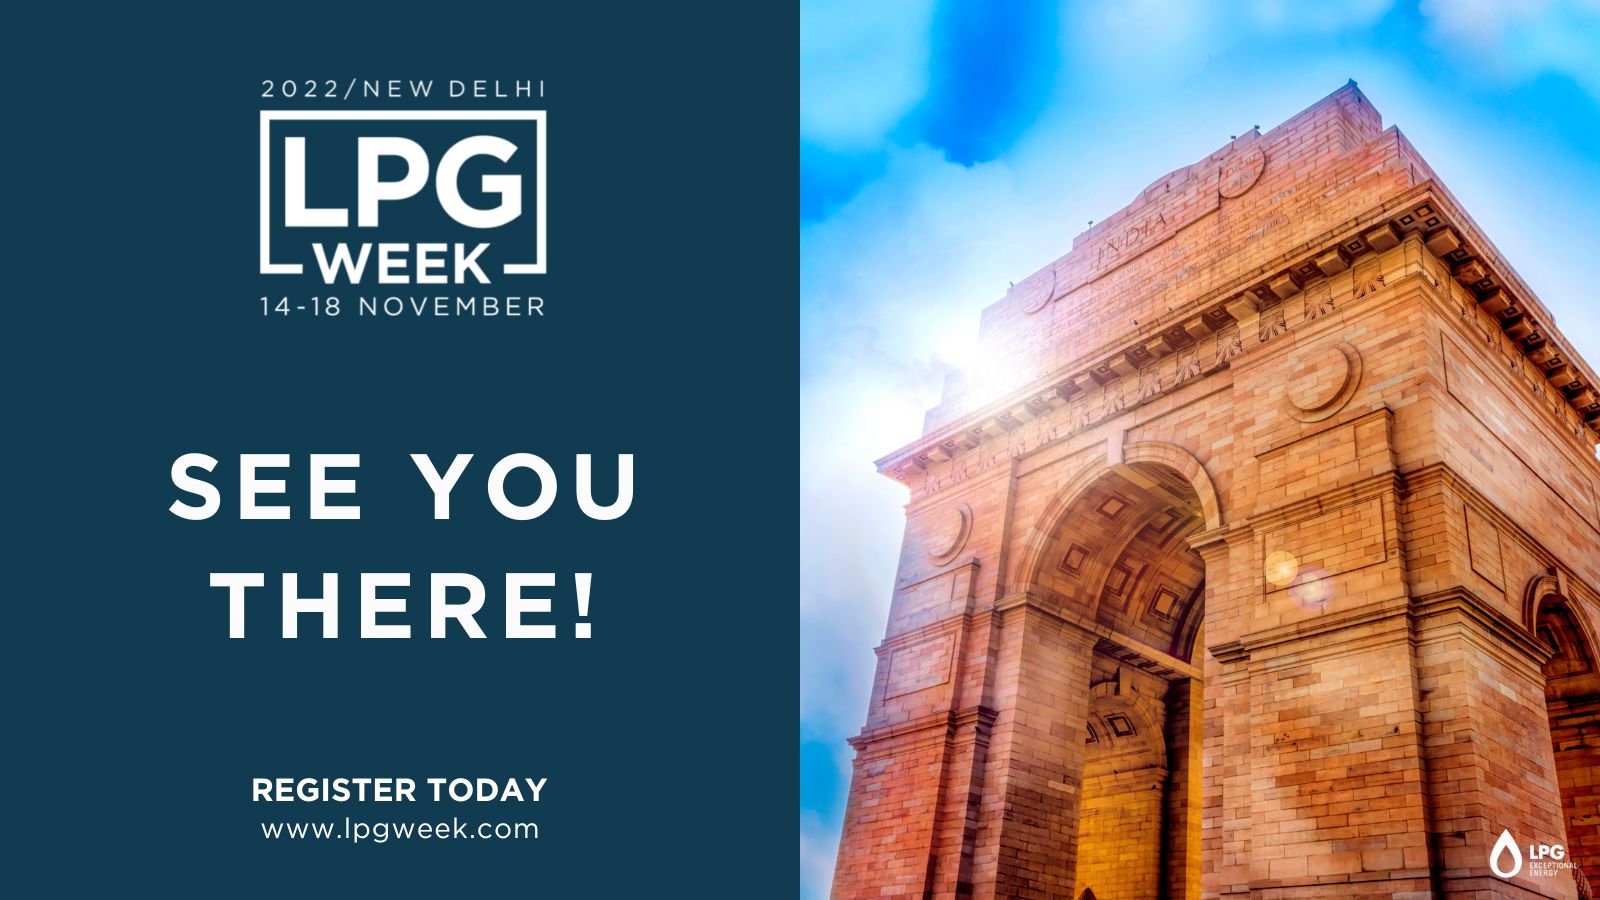 LPG Week New Delhi 2022